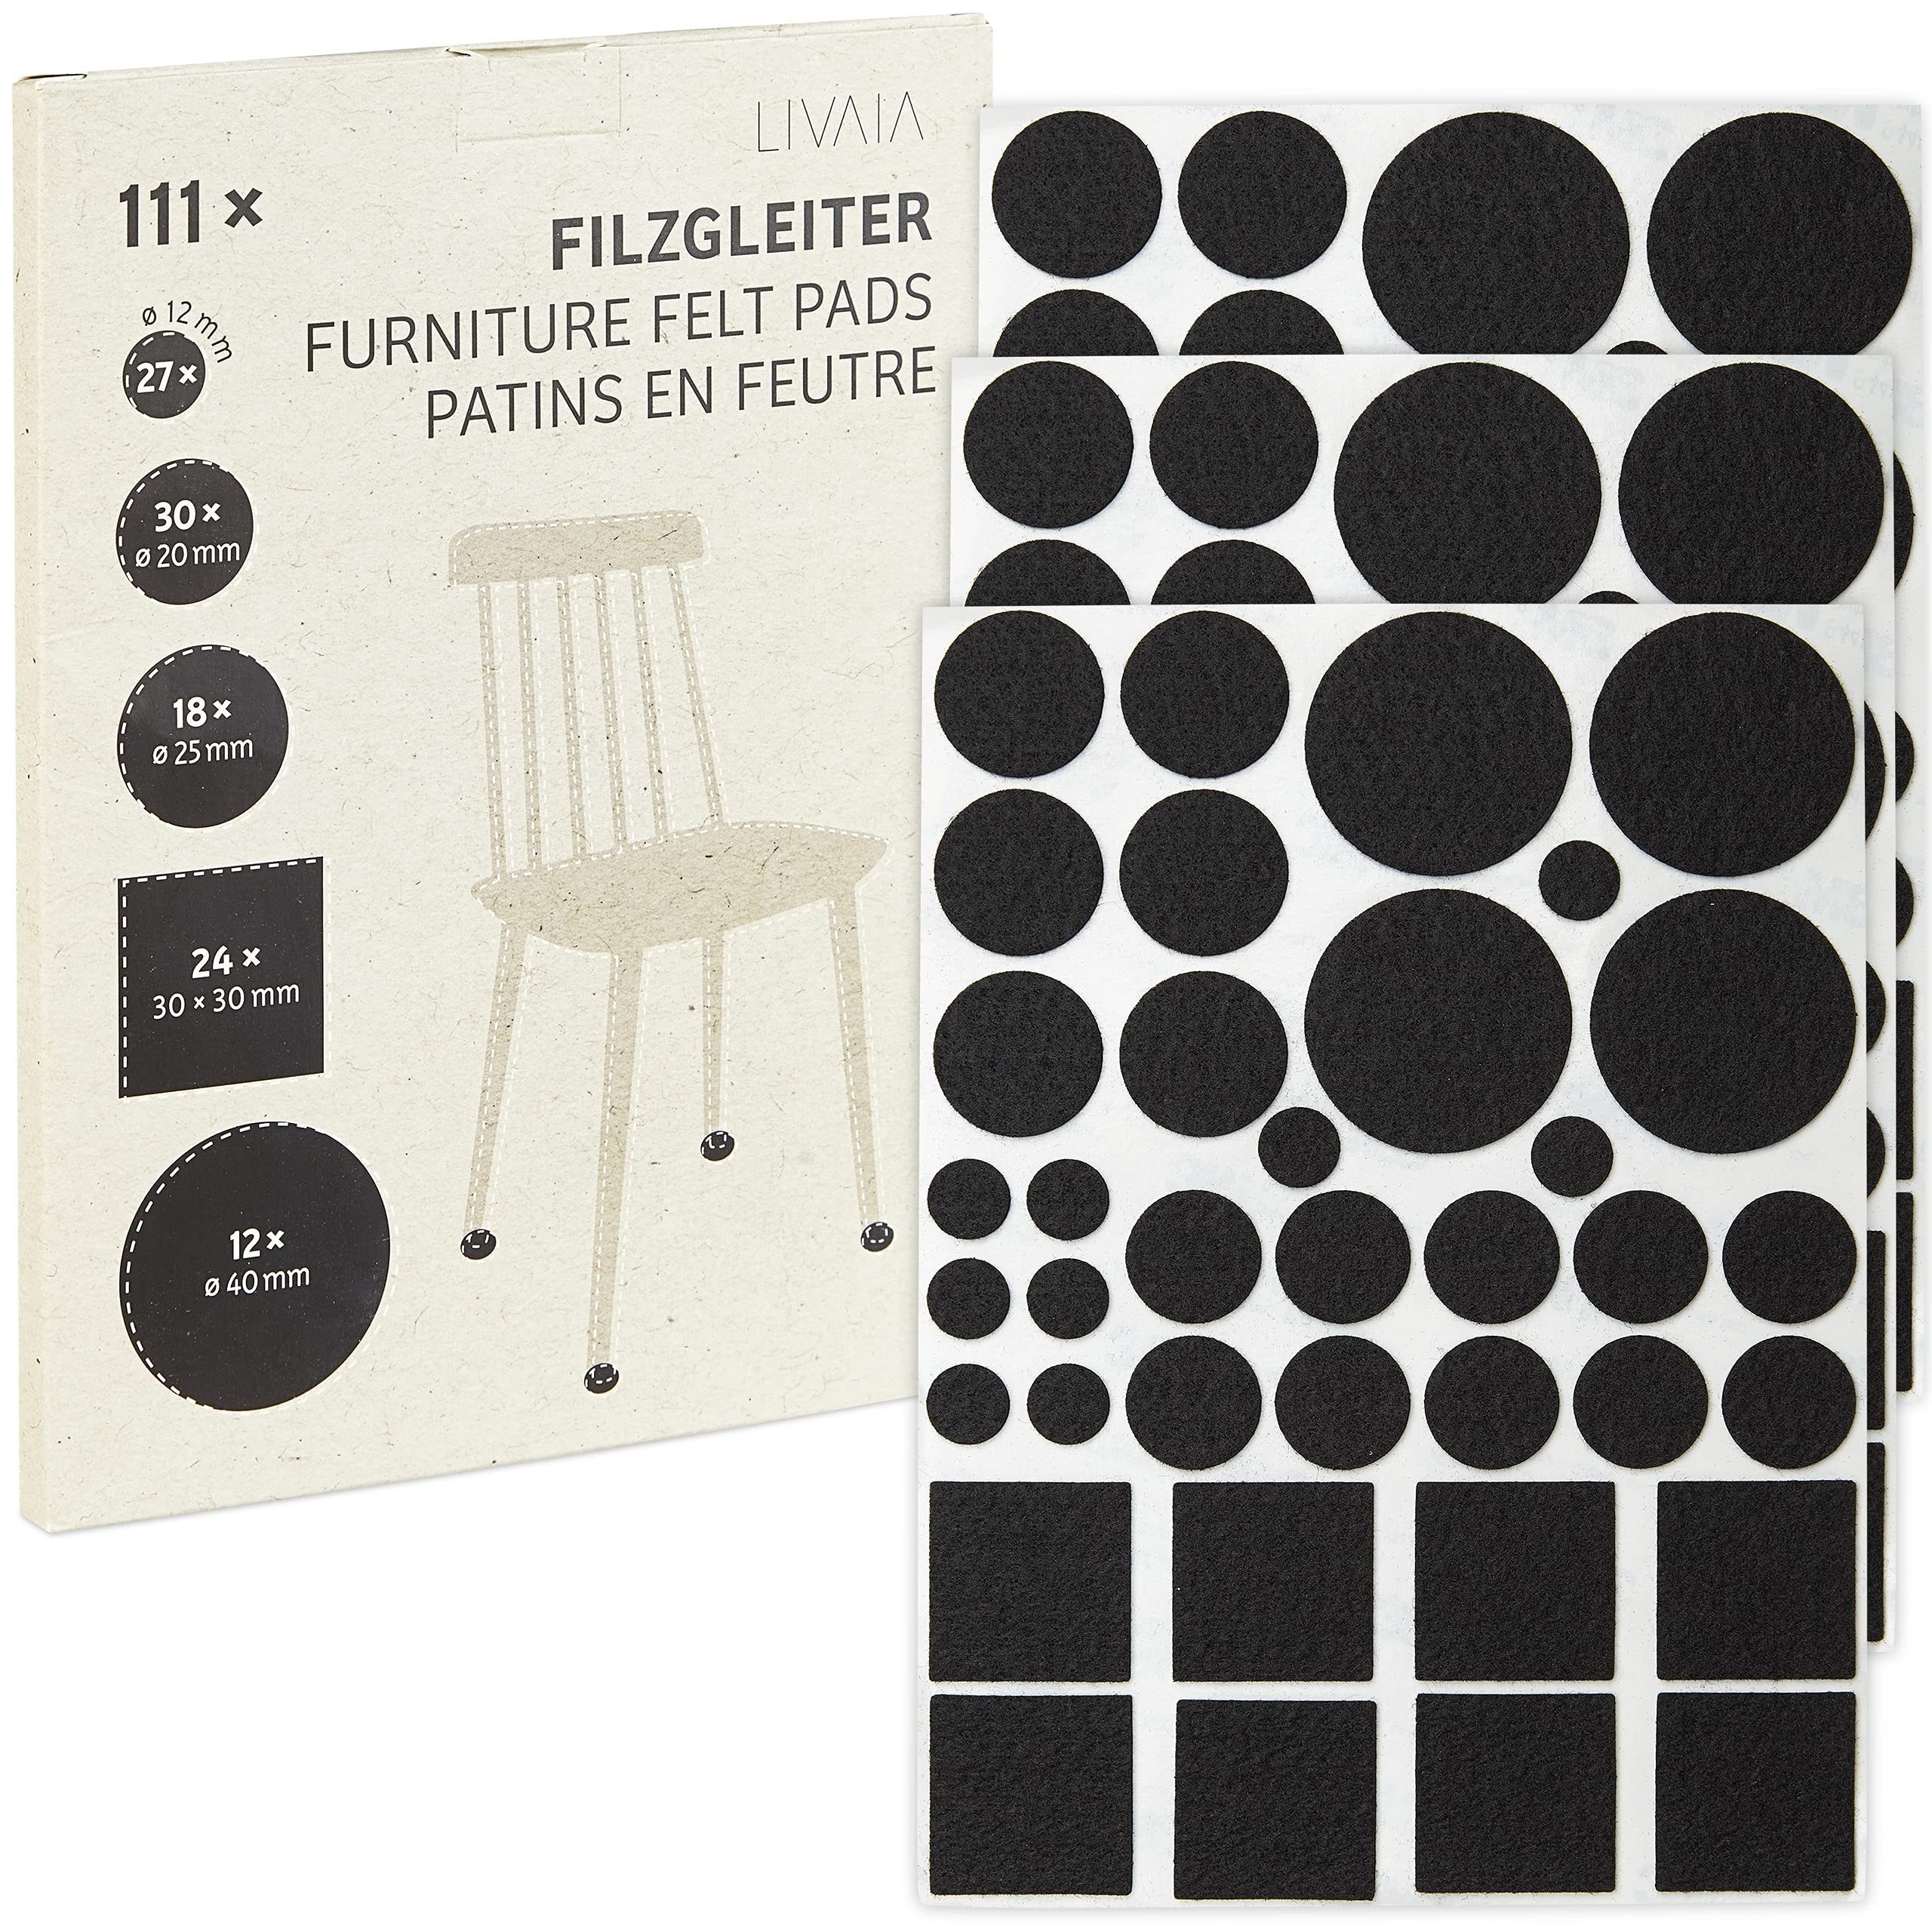 LIVAIA Filzgleiter Selbstklebende Filzgleiter-Set, (111x Stuhl Filzgleiter Set in 5 Größen, 111 St), STARKE HAFTUNG Schwarz